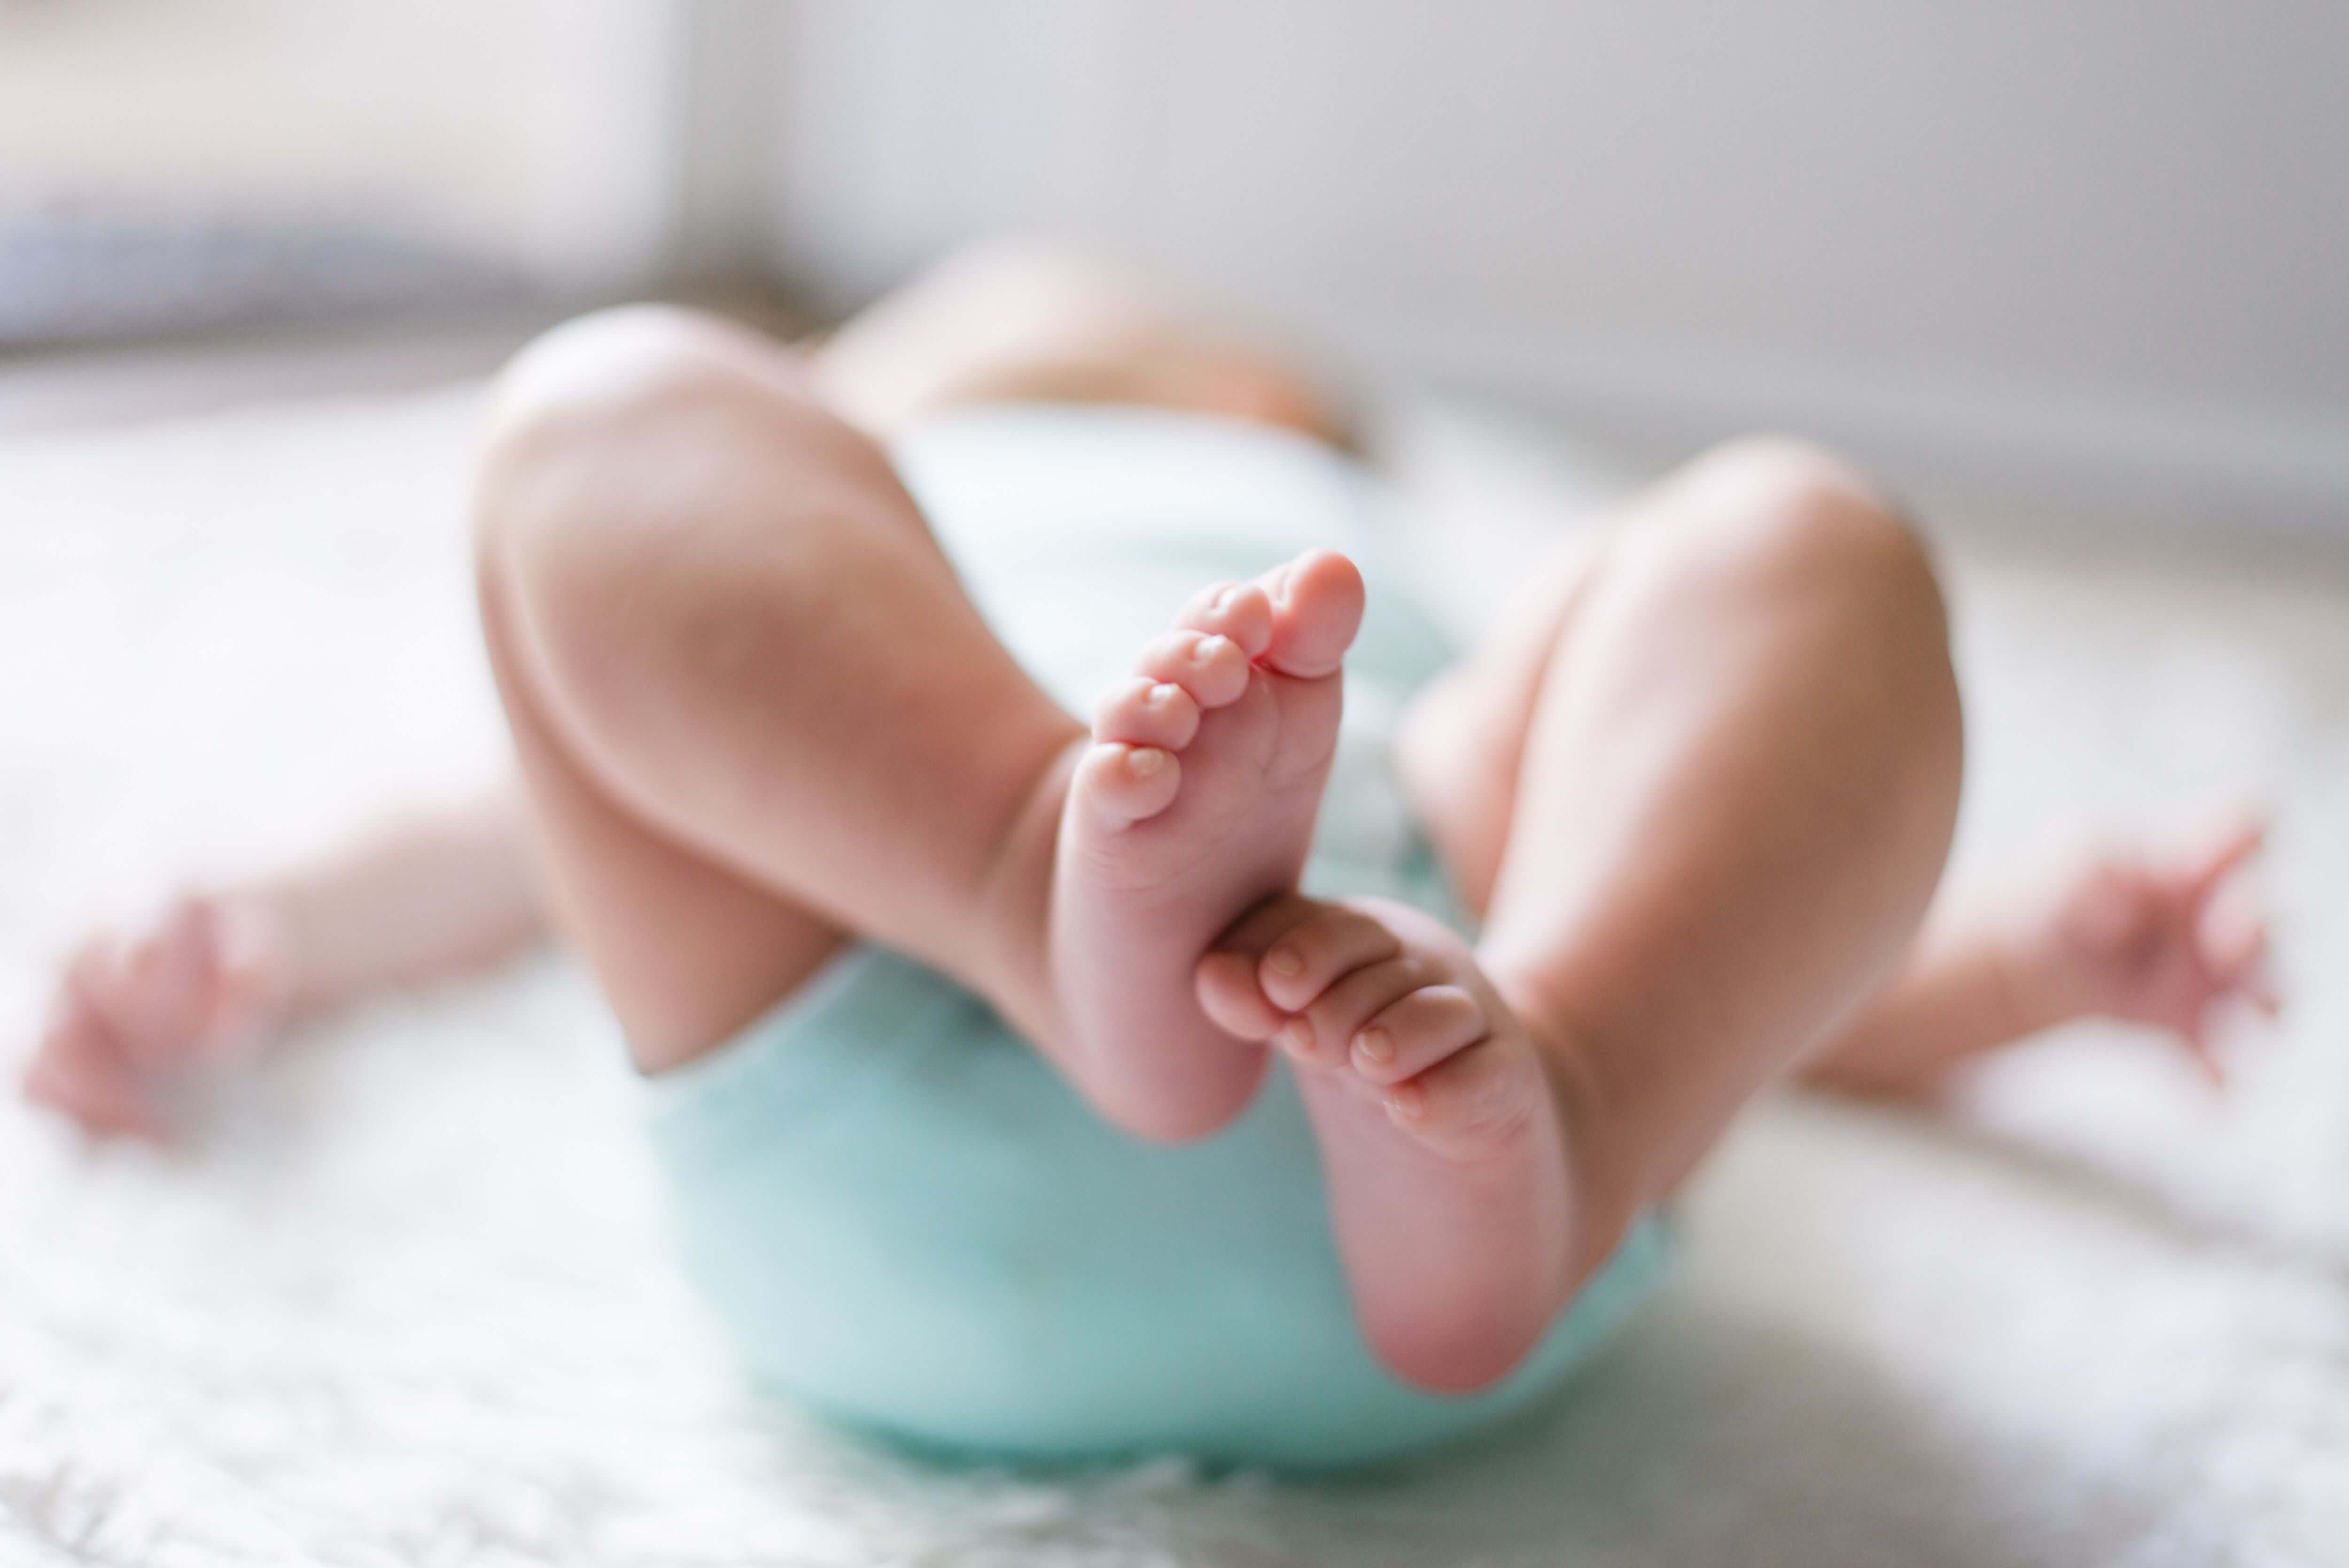 Rozaduras en el bebé, qué son y cómo prevenirlas... – Mamá Natural